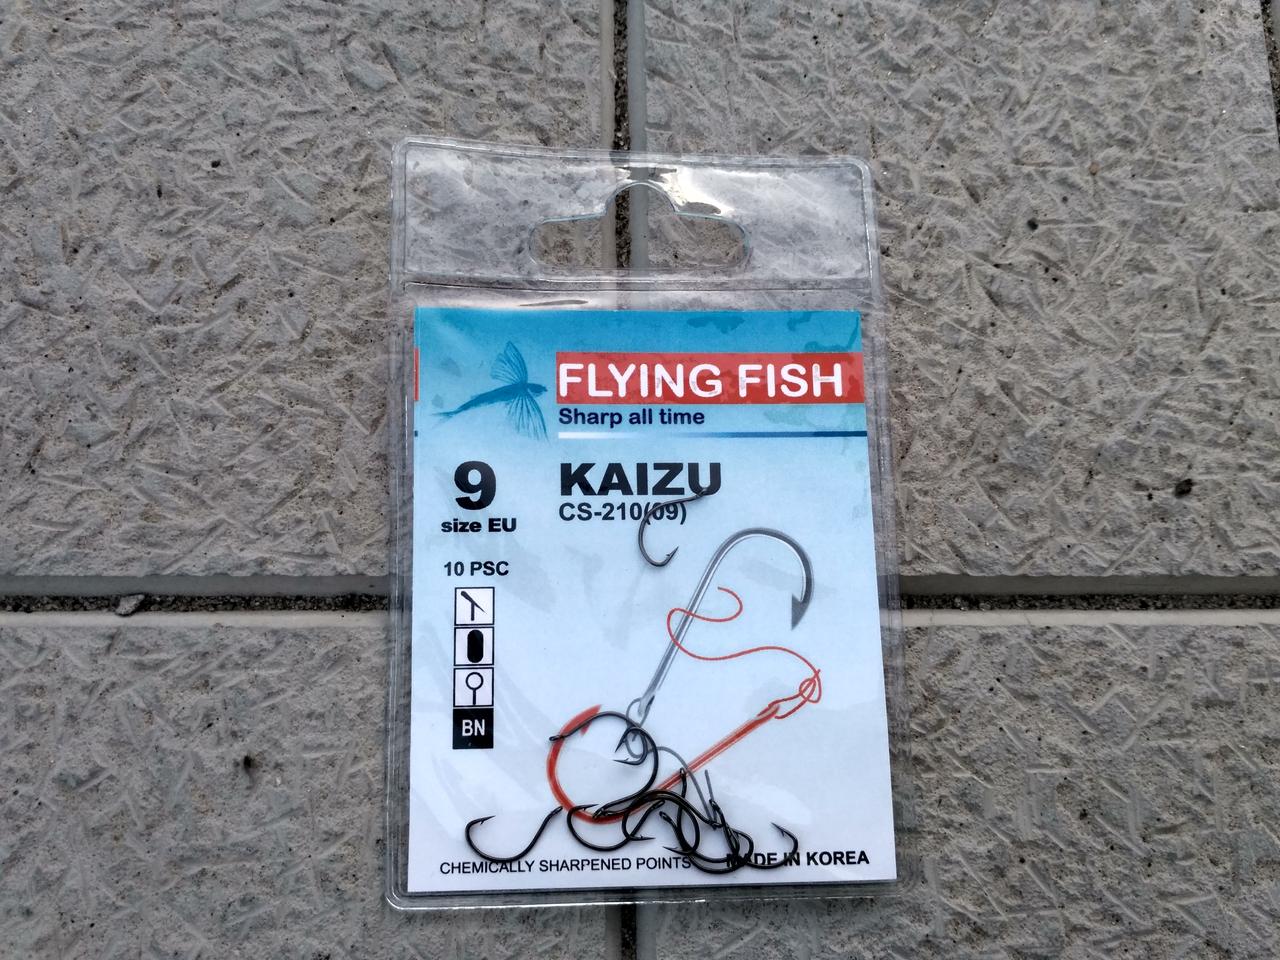 FLYING FISH KAIZU 9